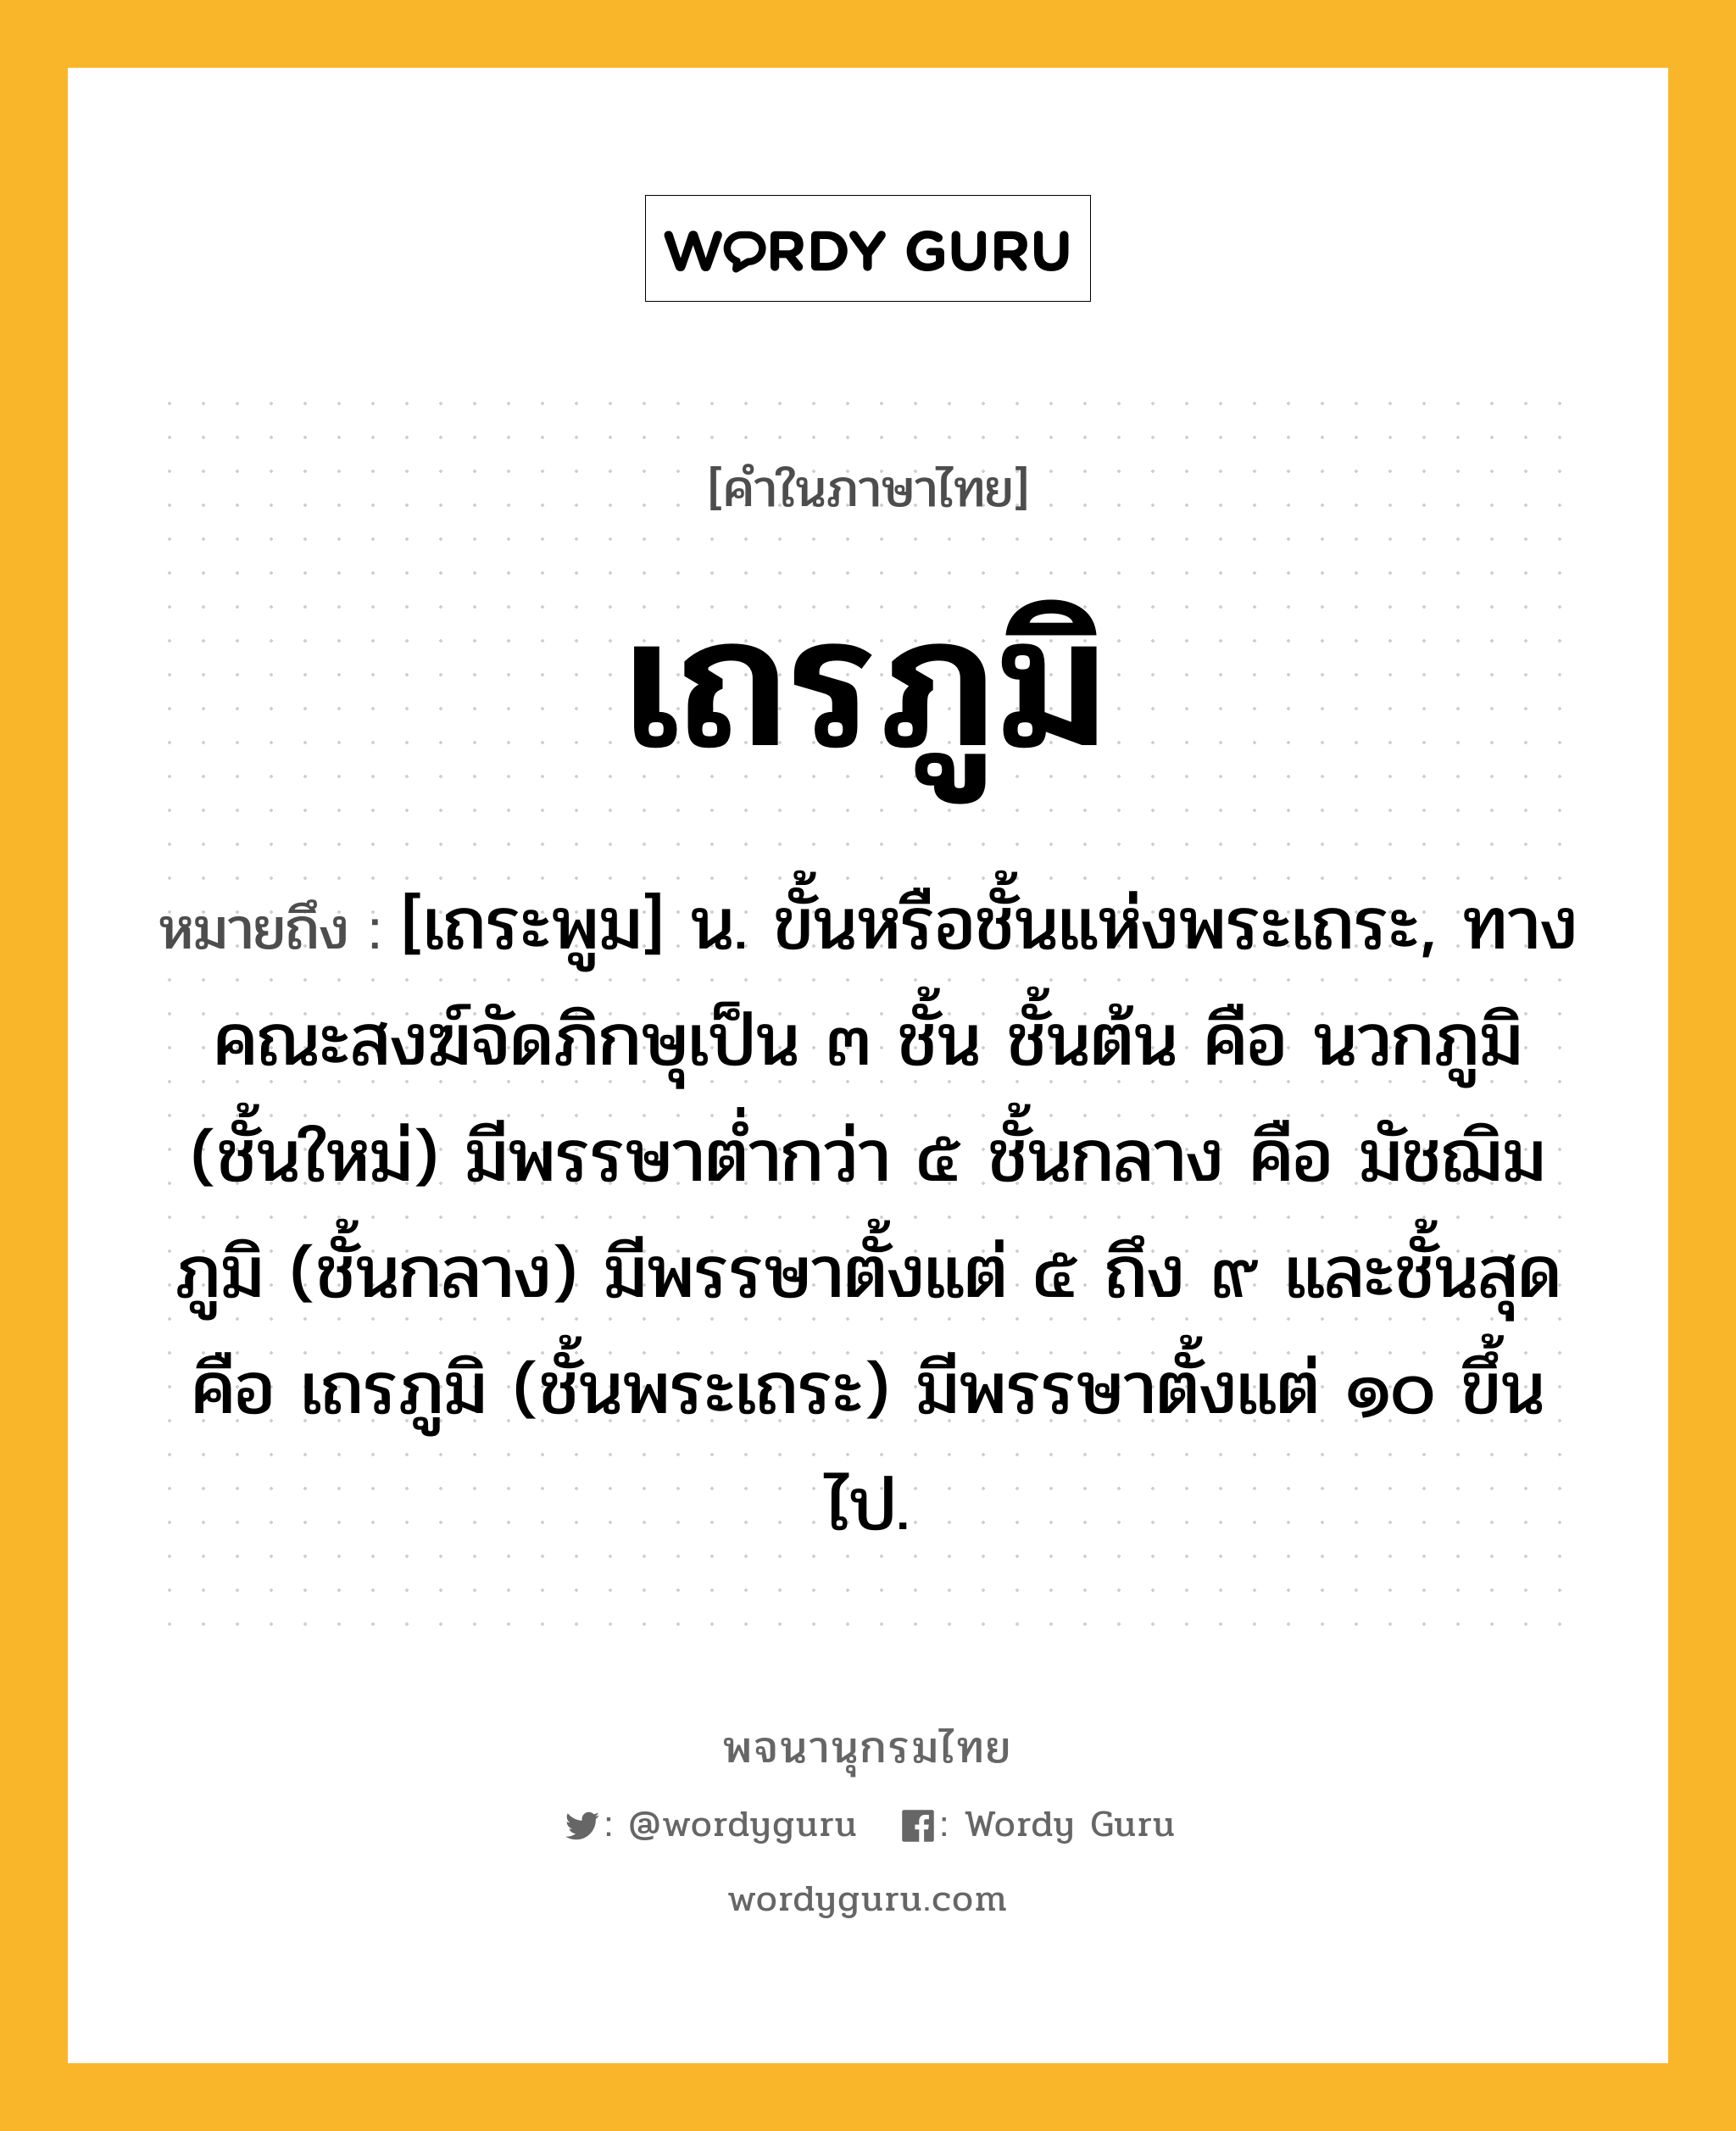 เถรภูมิ หมายถึงอะไร?, คำในภาษาไทย เถรภูมิ หมายถึง [เถระพูม] น. ขั้นหรือชั้นแห่งพระเถระ, ทางคณะสงฆ์จัดภิกษุเป็น ๓ ชั้น ชั้นต้น คือ นวกภูมิ (ชั้นใหม่) มีพรรษาตํ่ากว่า ๕ ชั้นกลาง คือ มัชฌิมภูมิ (ชั้นกลาง) มีพรรษาตั้งแต่ ๕ ถึง ๙ และชั้นสุดคือ เถรภูมิ (ชั้นพระเถระ) มีพรรษาตั้งแต่ ๑๐ ขึ้นไป.